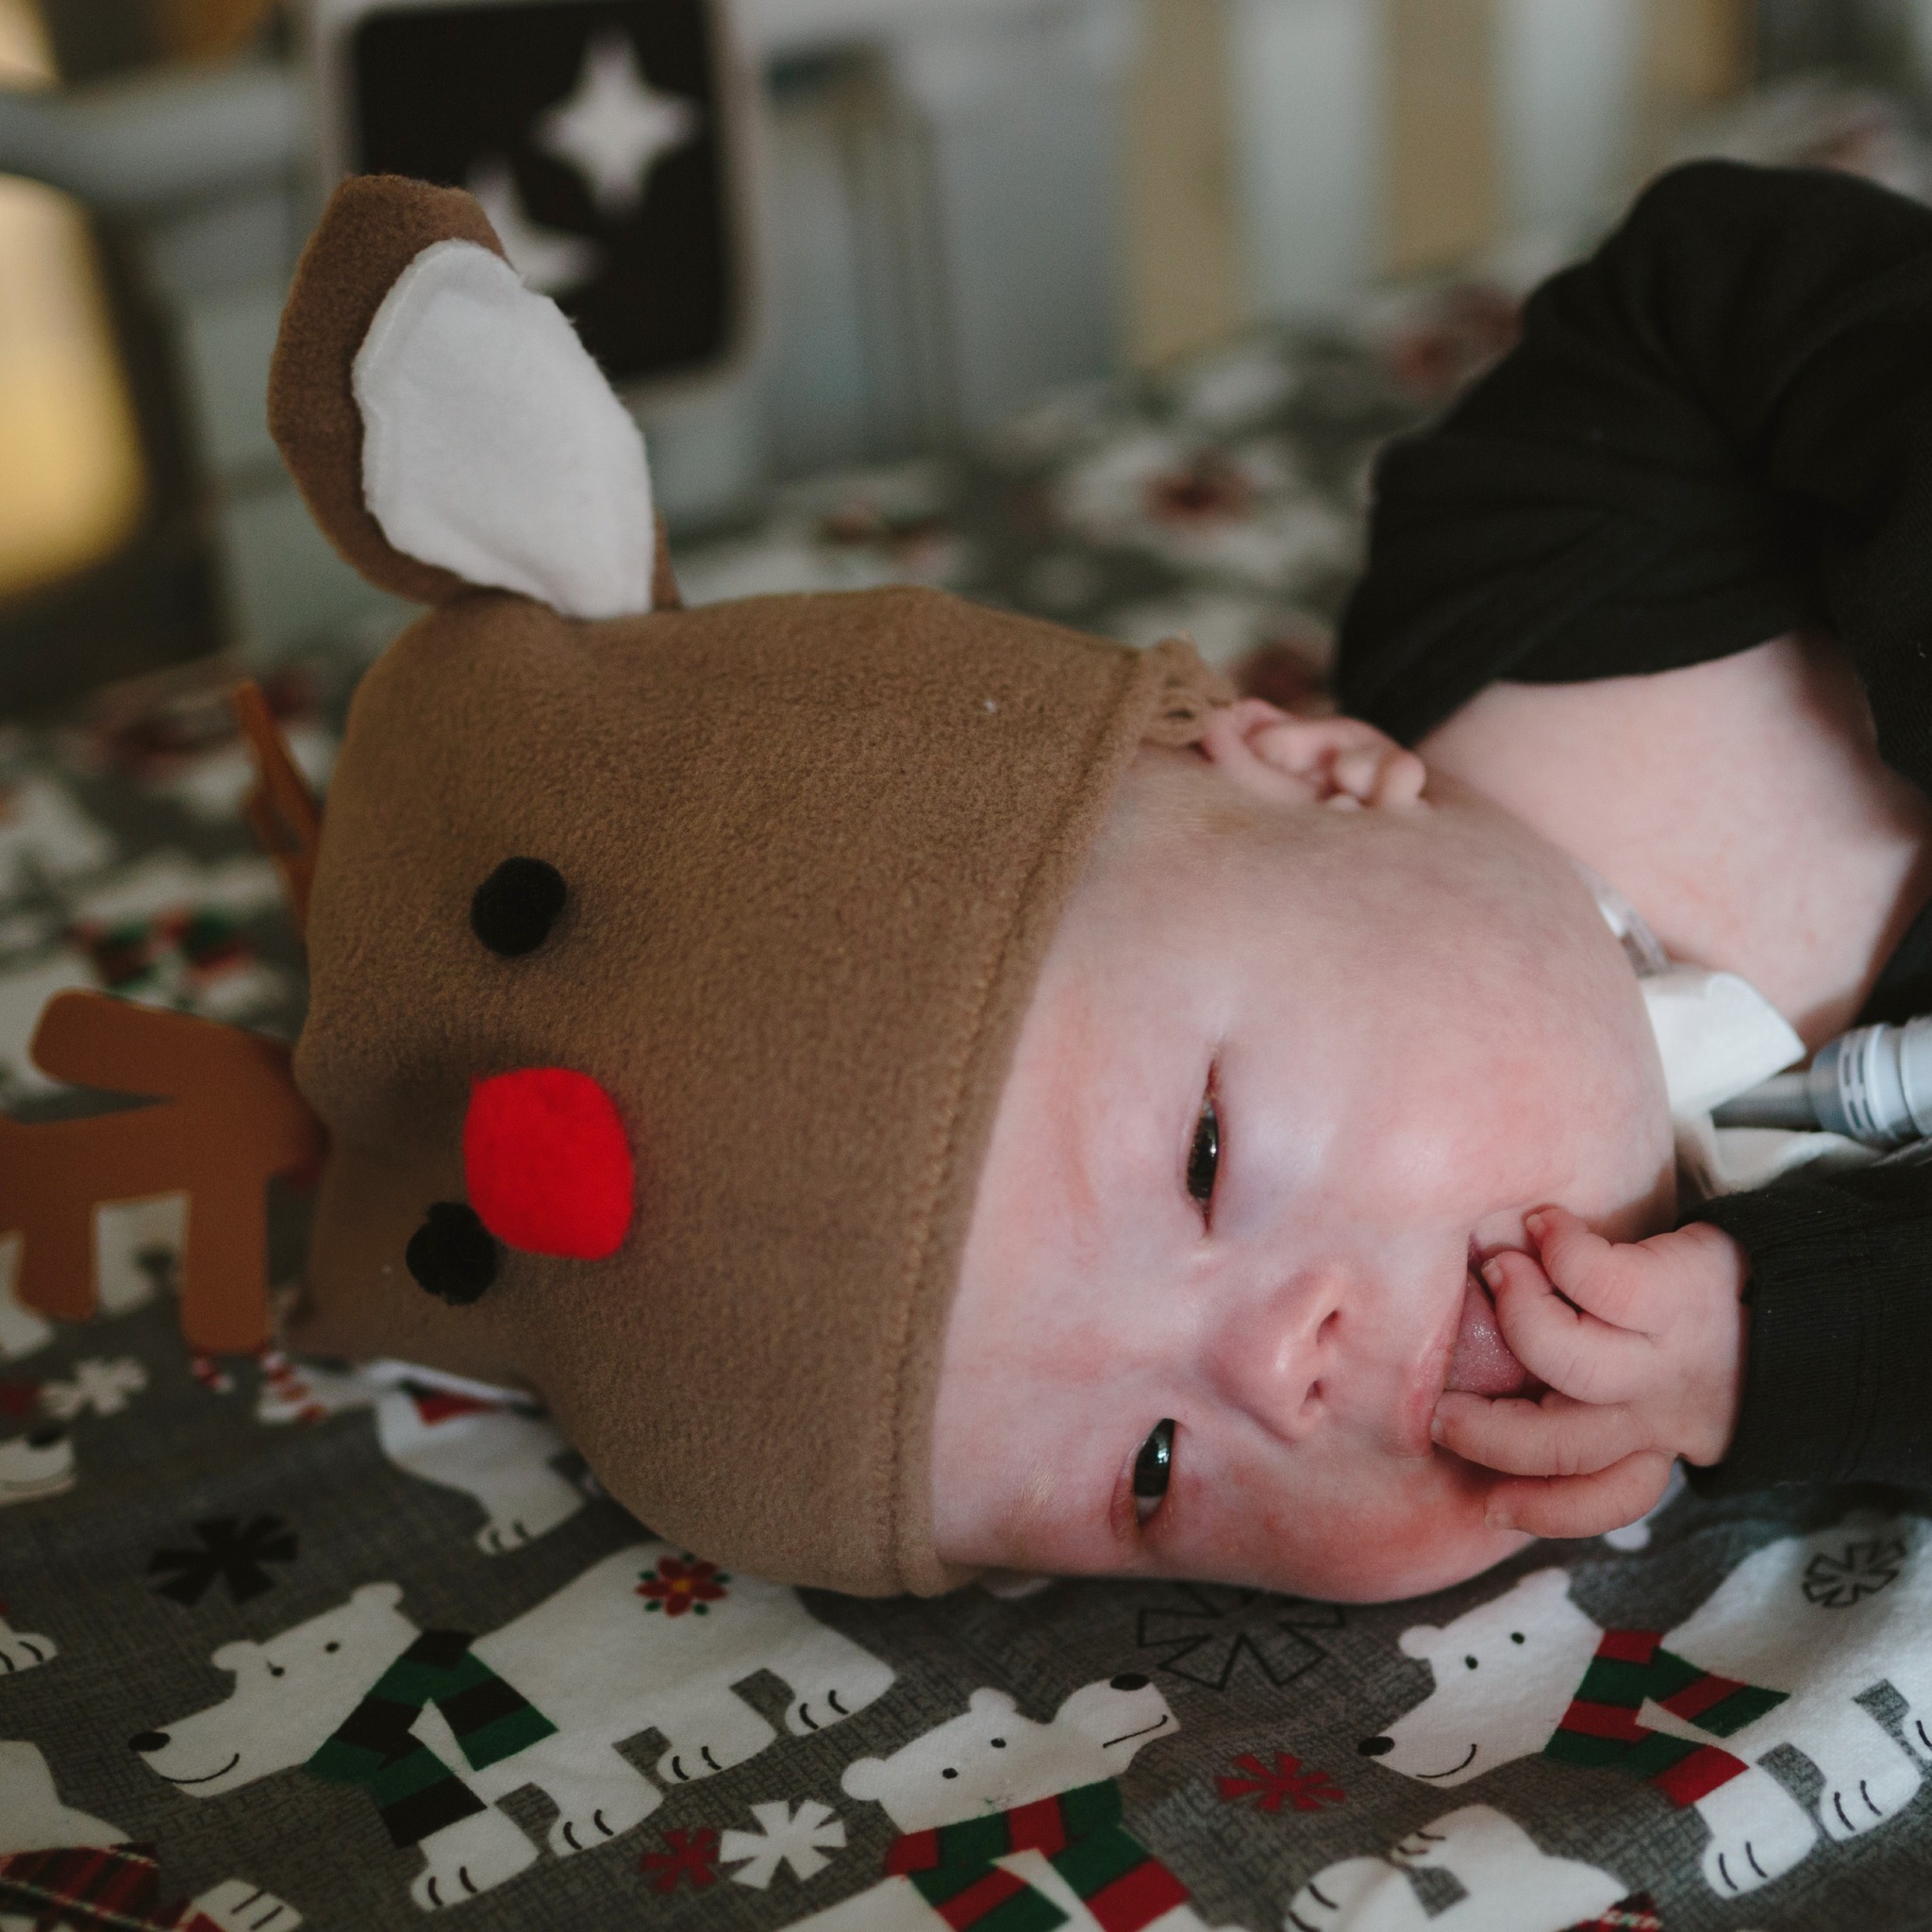  Младенцы и Рождество: медсестры одевают недоношенных малышей в праздничные наряды 